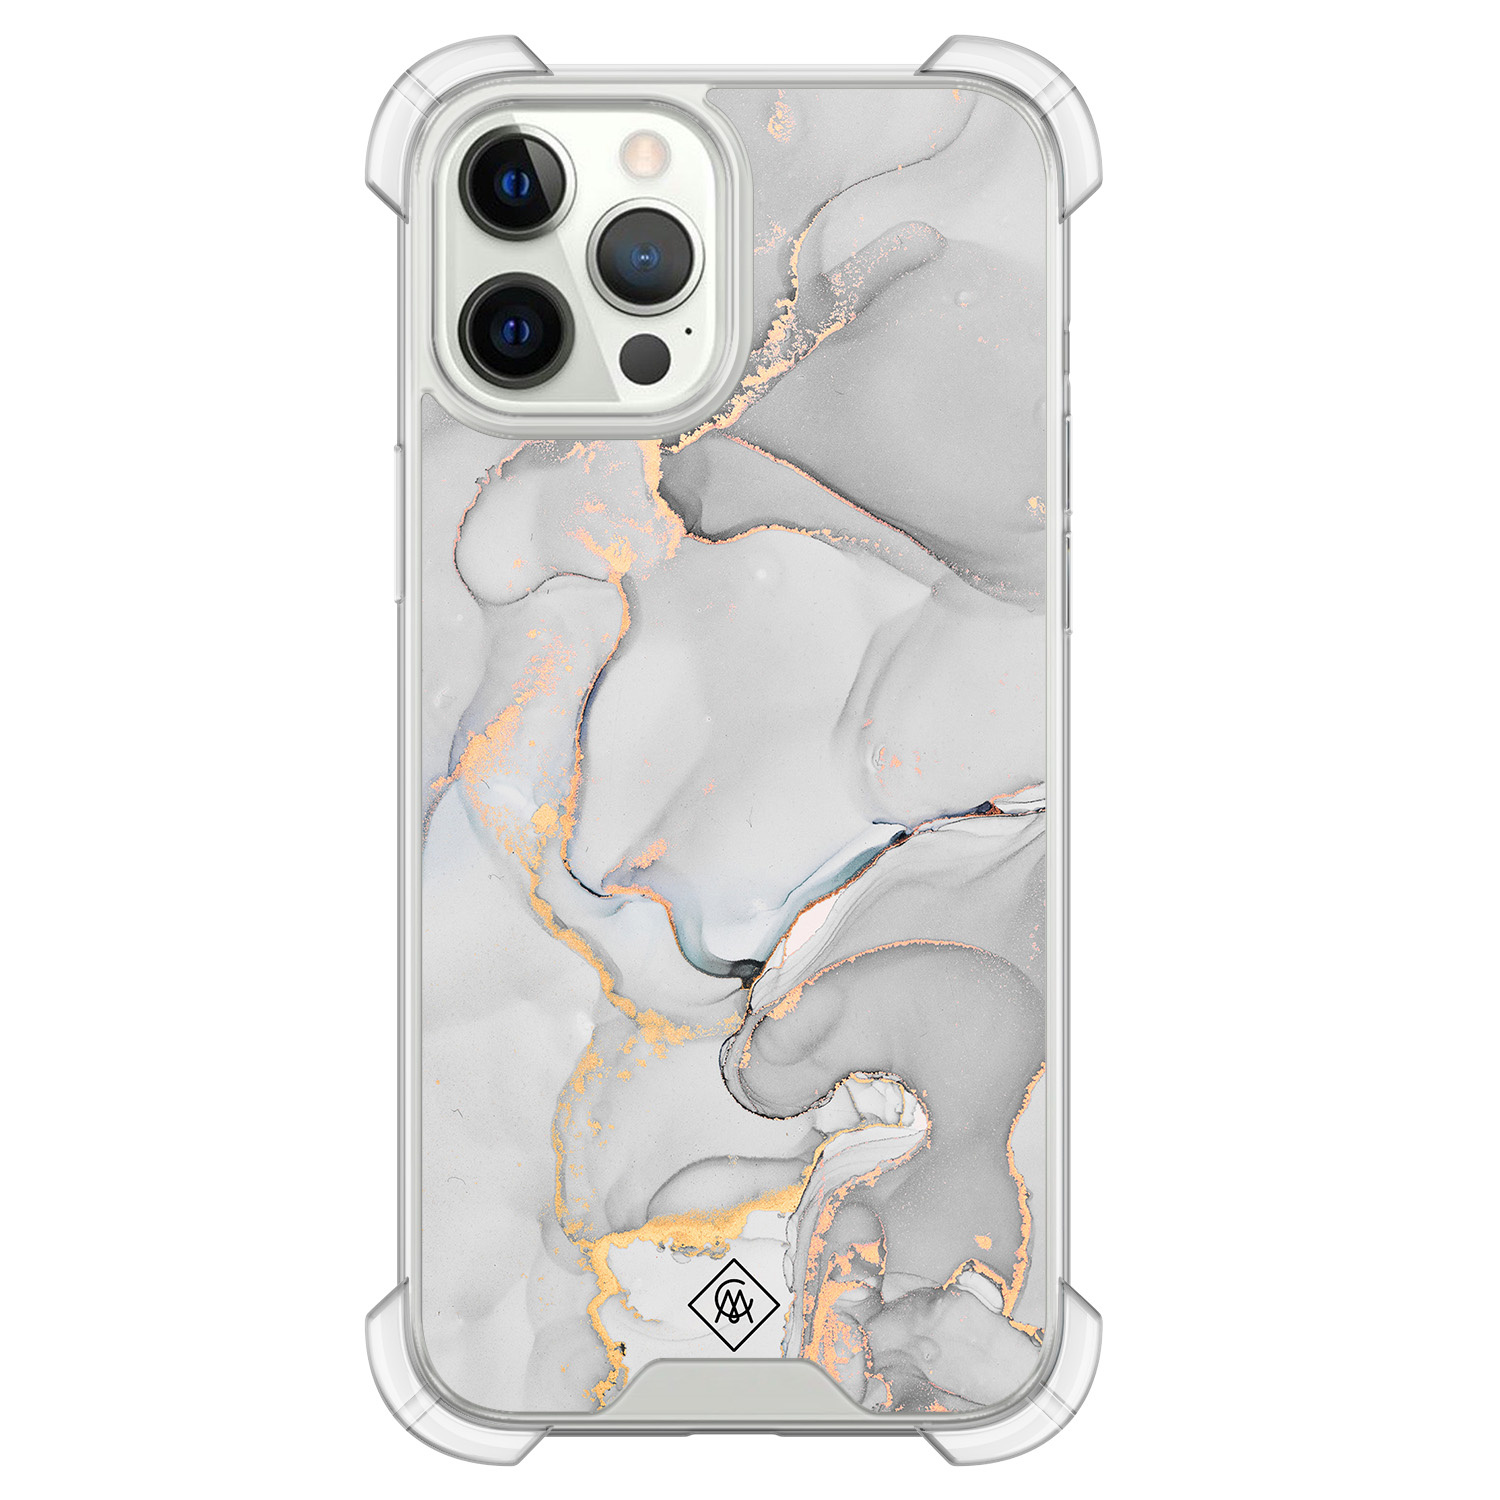 iPhone 12 (Pro) siliconen shockproof hoesje - Marmer grijs